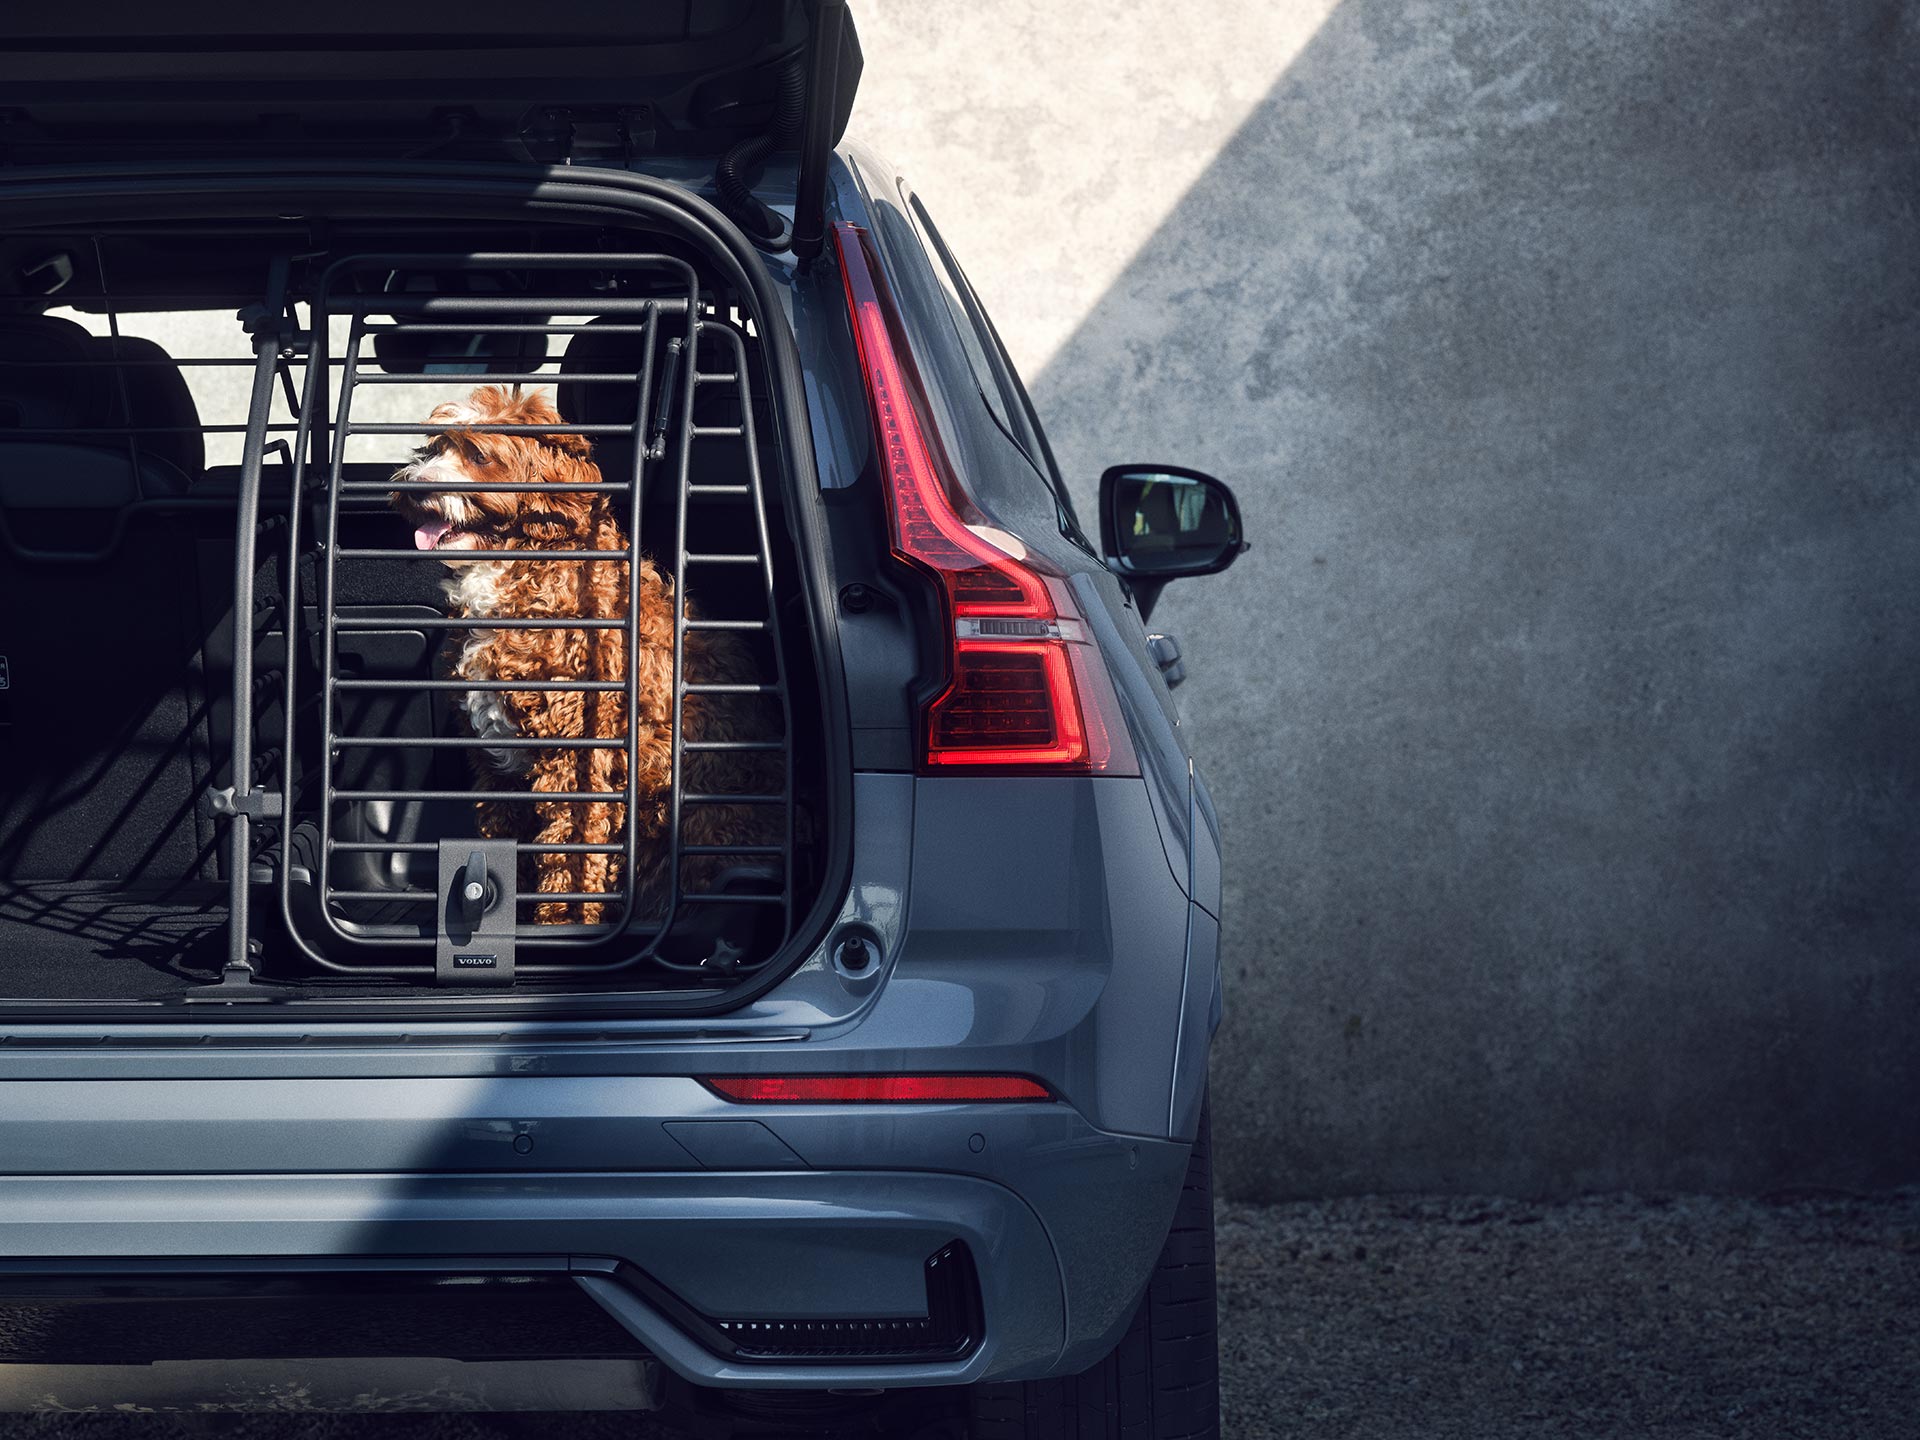 Un câine roșcat stă într-o cușcă securizată, un accesoriu proiectat special pentru siguranța și confortul animalelor de companie care călătoresc în mașinile Volvo.